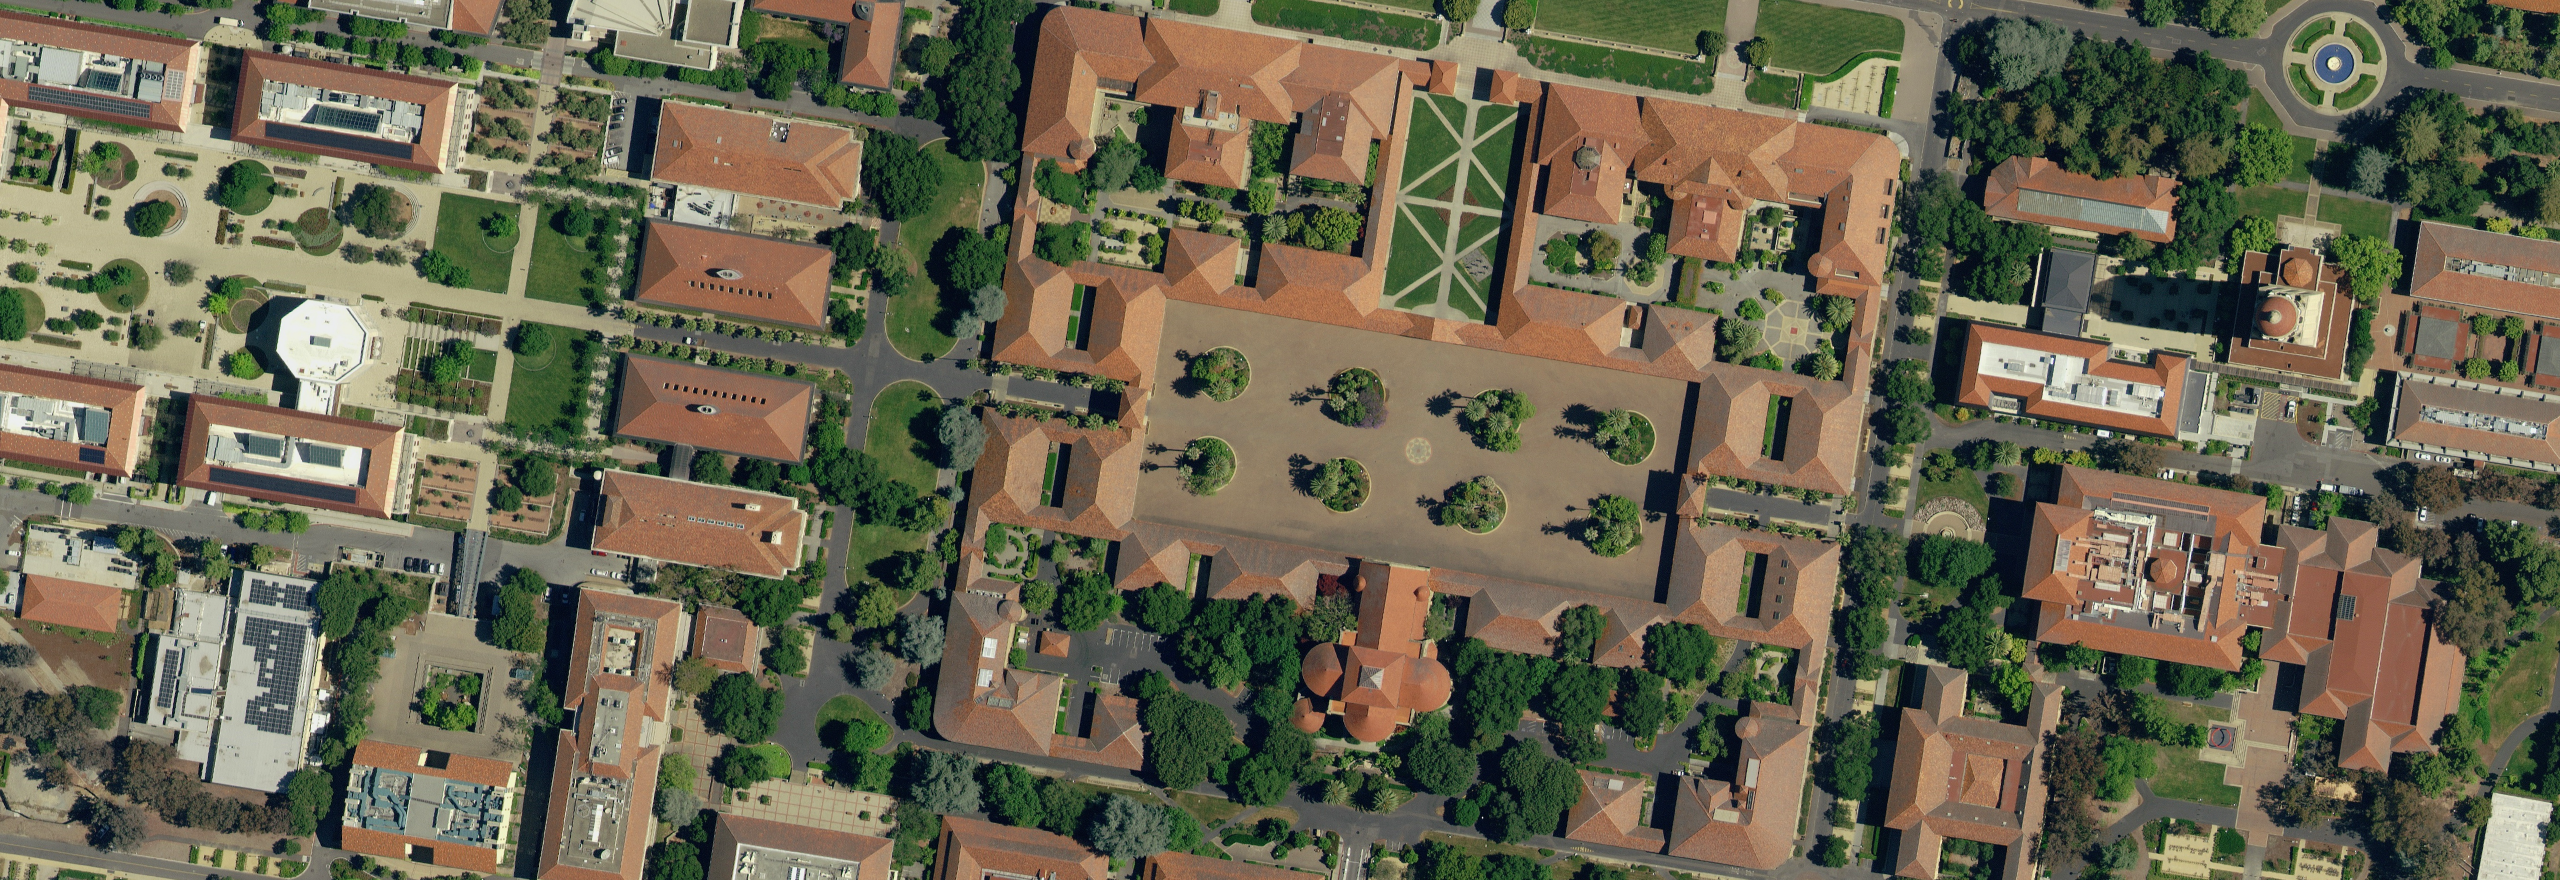 HxGN Content Program Luftbilddaten von Universitätsgebäuden in Kalifornien